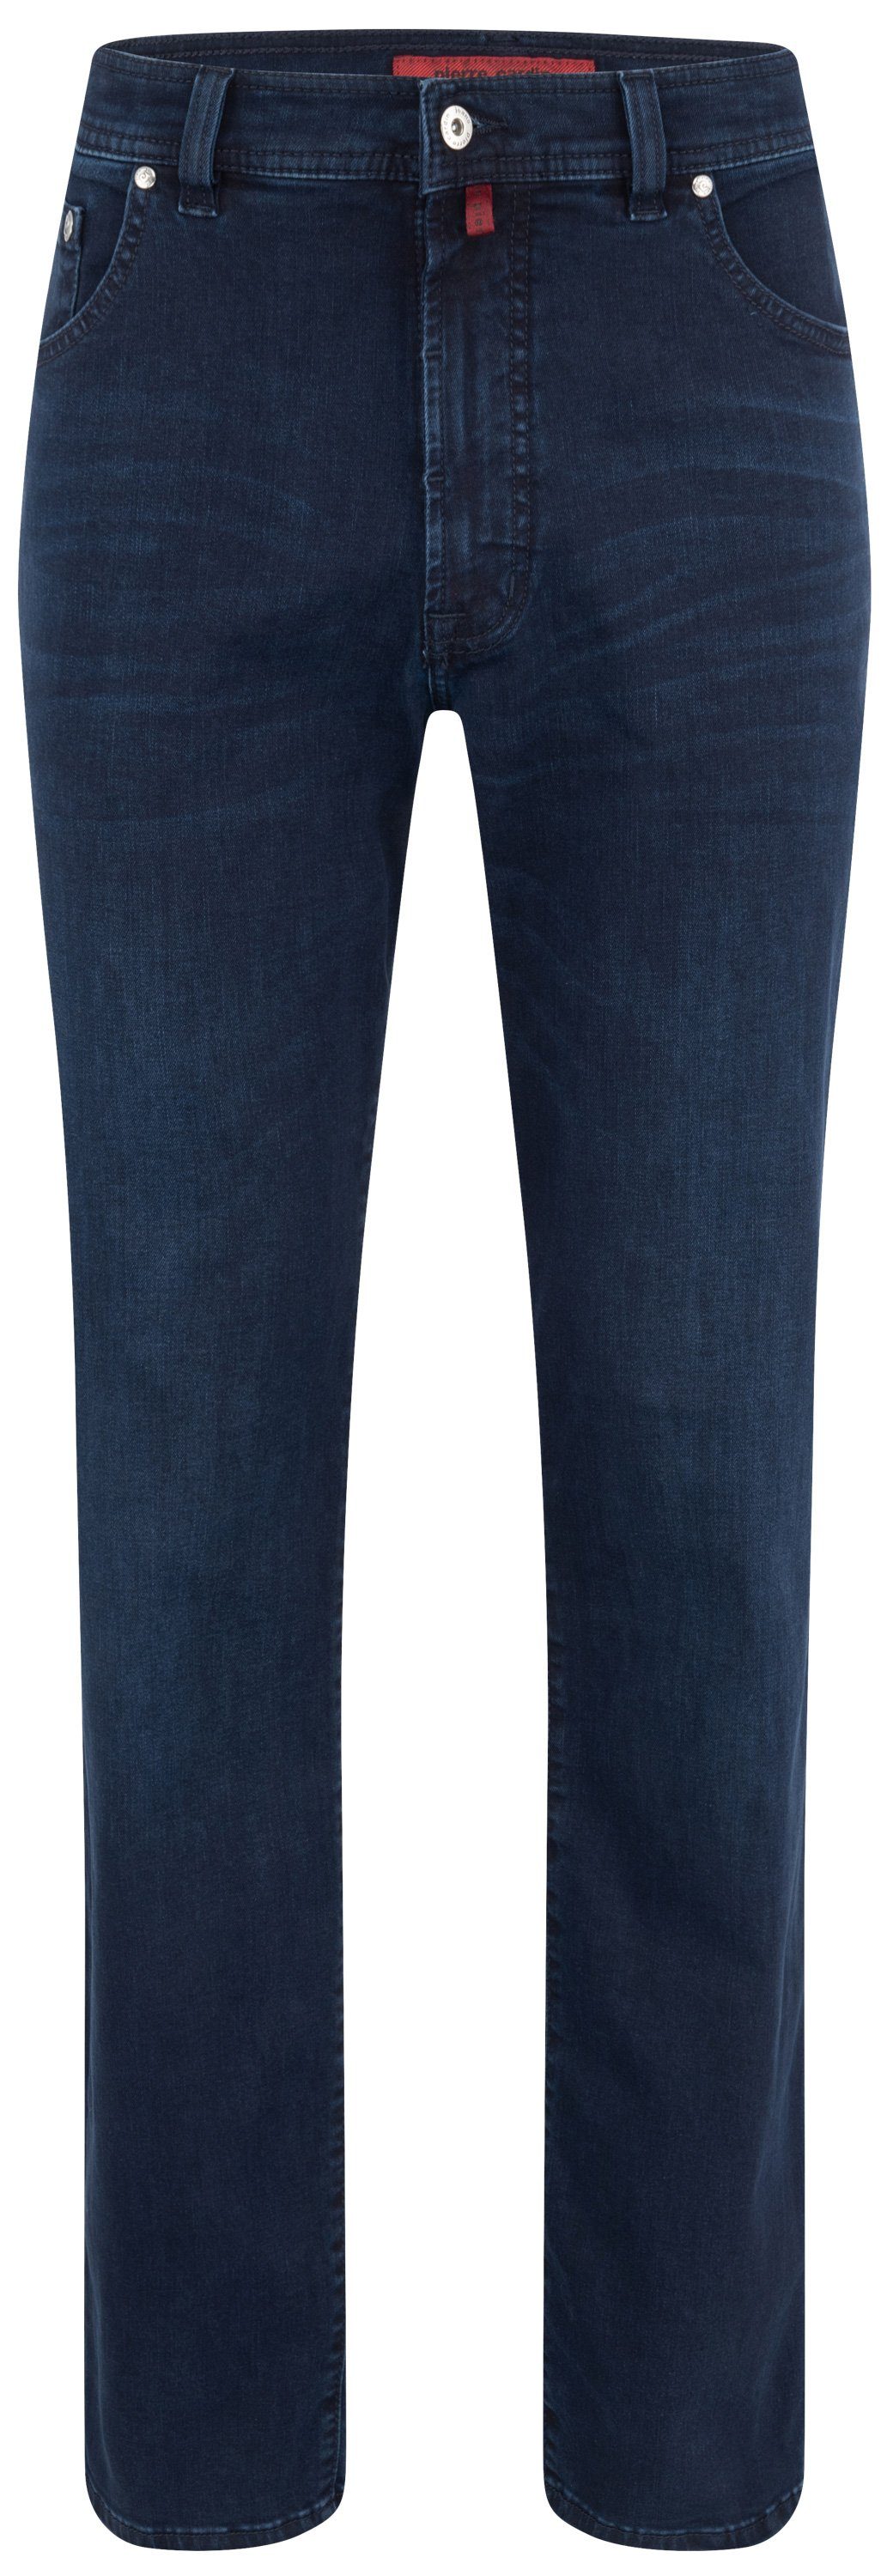 Pierre Cardin 5-Pocket-Jeans PIERRE CARDIN DIJON blue/black used 32310 7005.6802